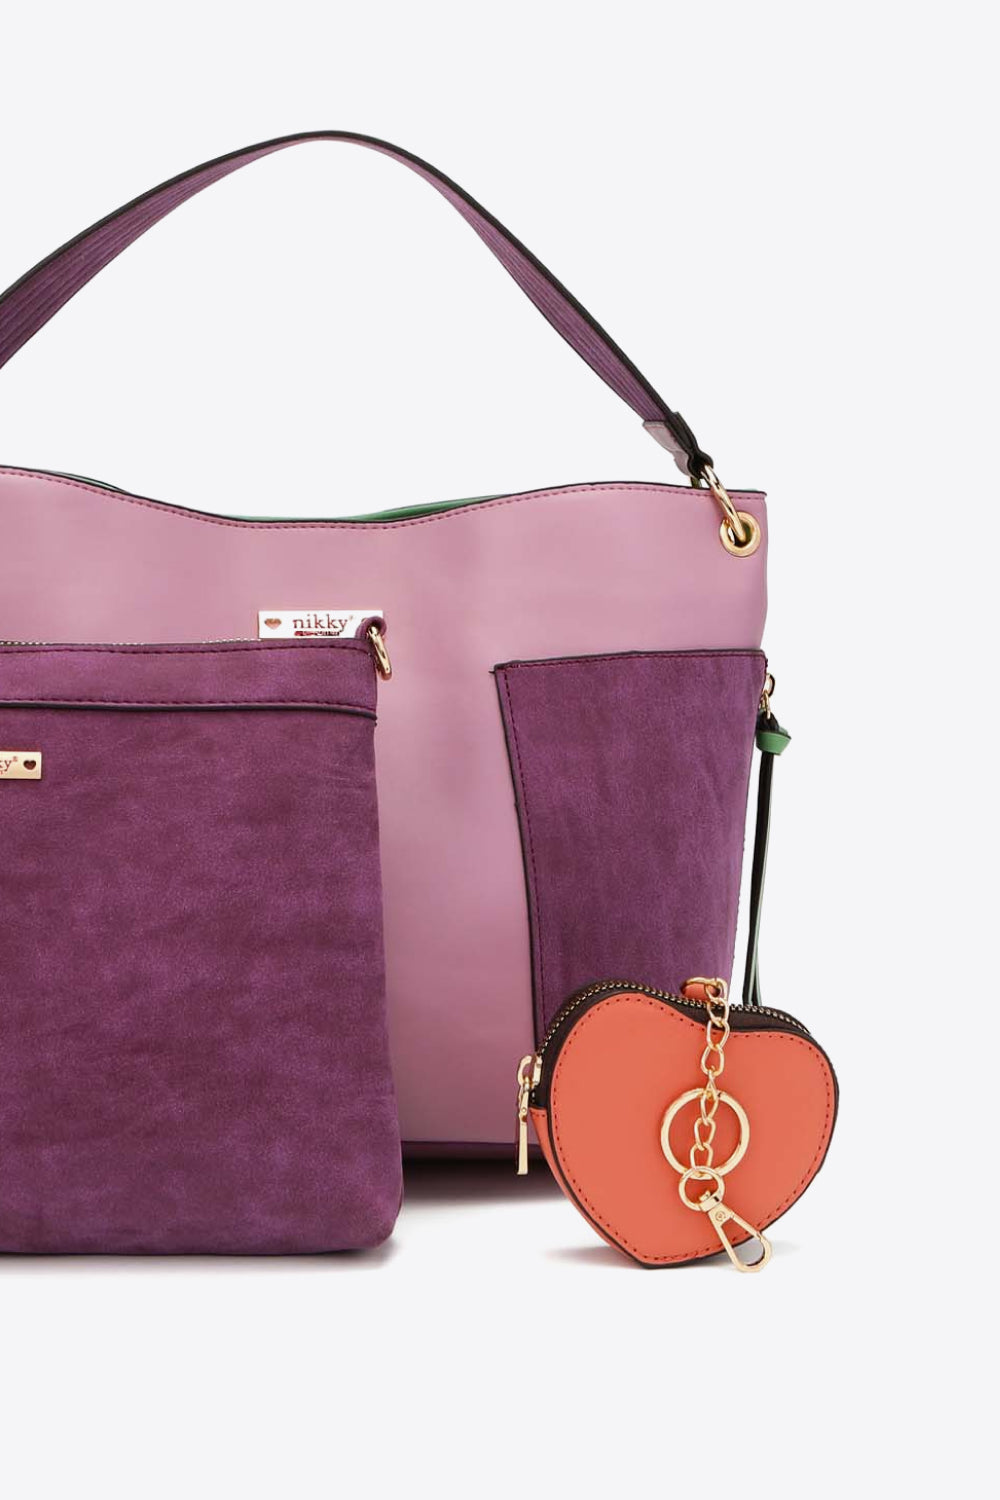 Nicole Lee USA Sweetheart Handbag Set - Handbag - FITGGINS